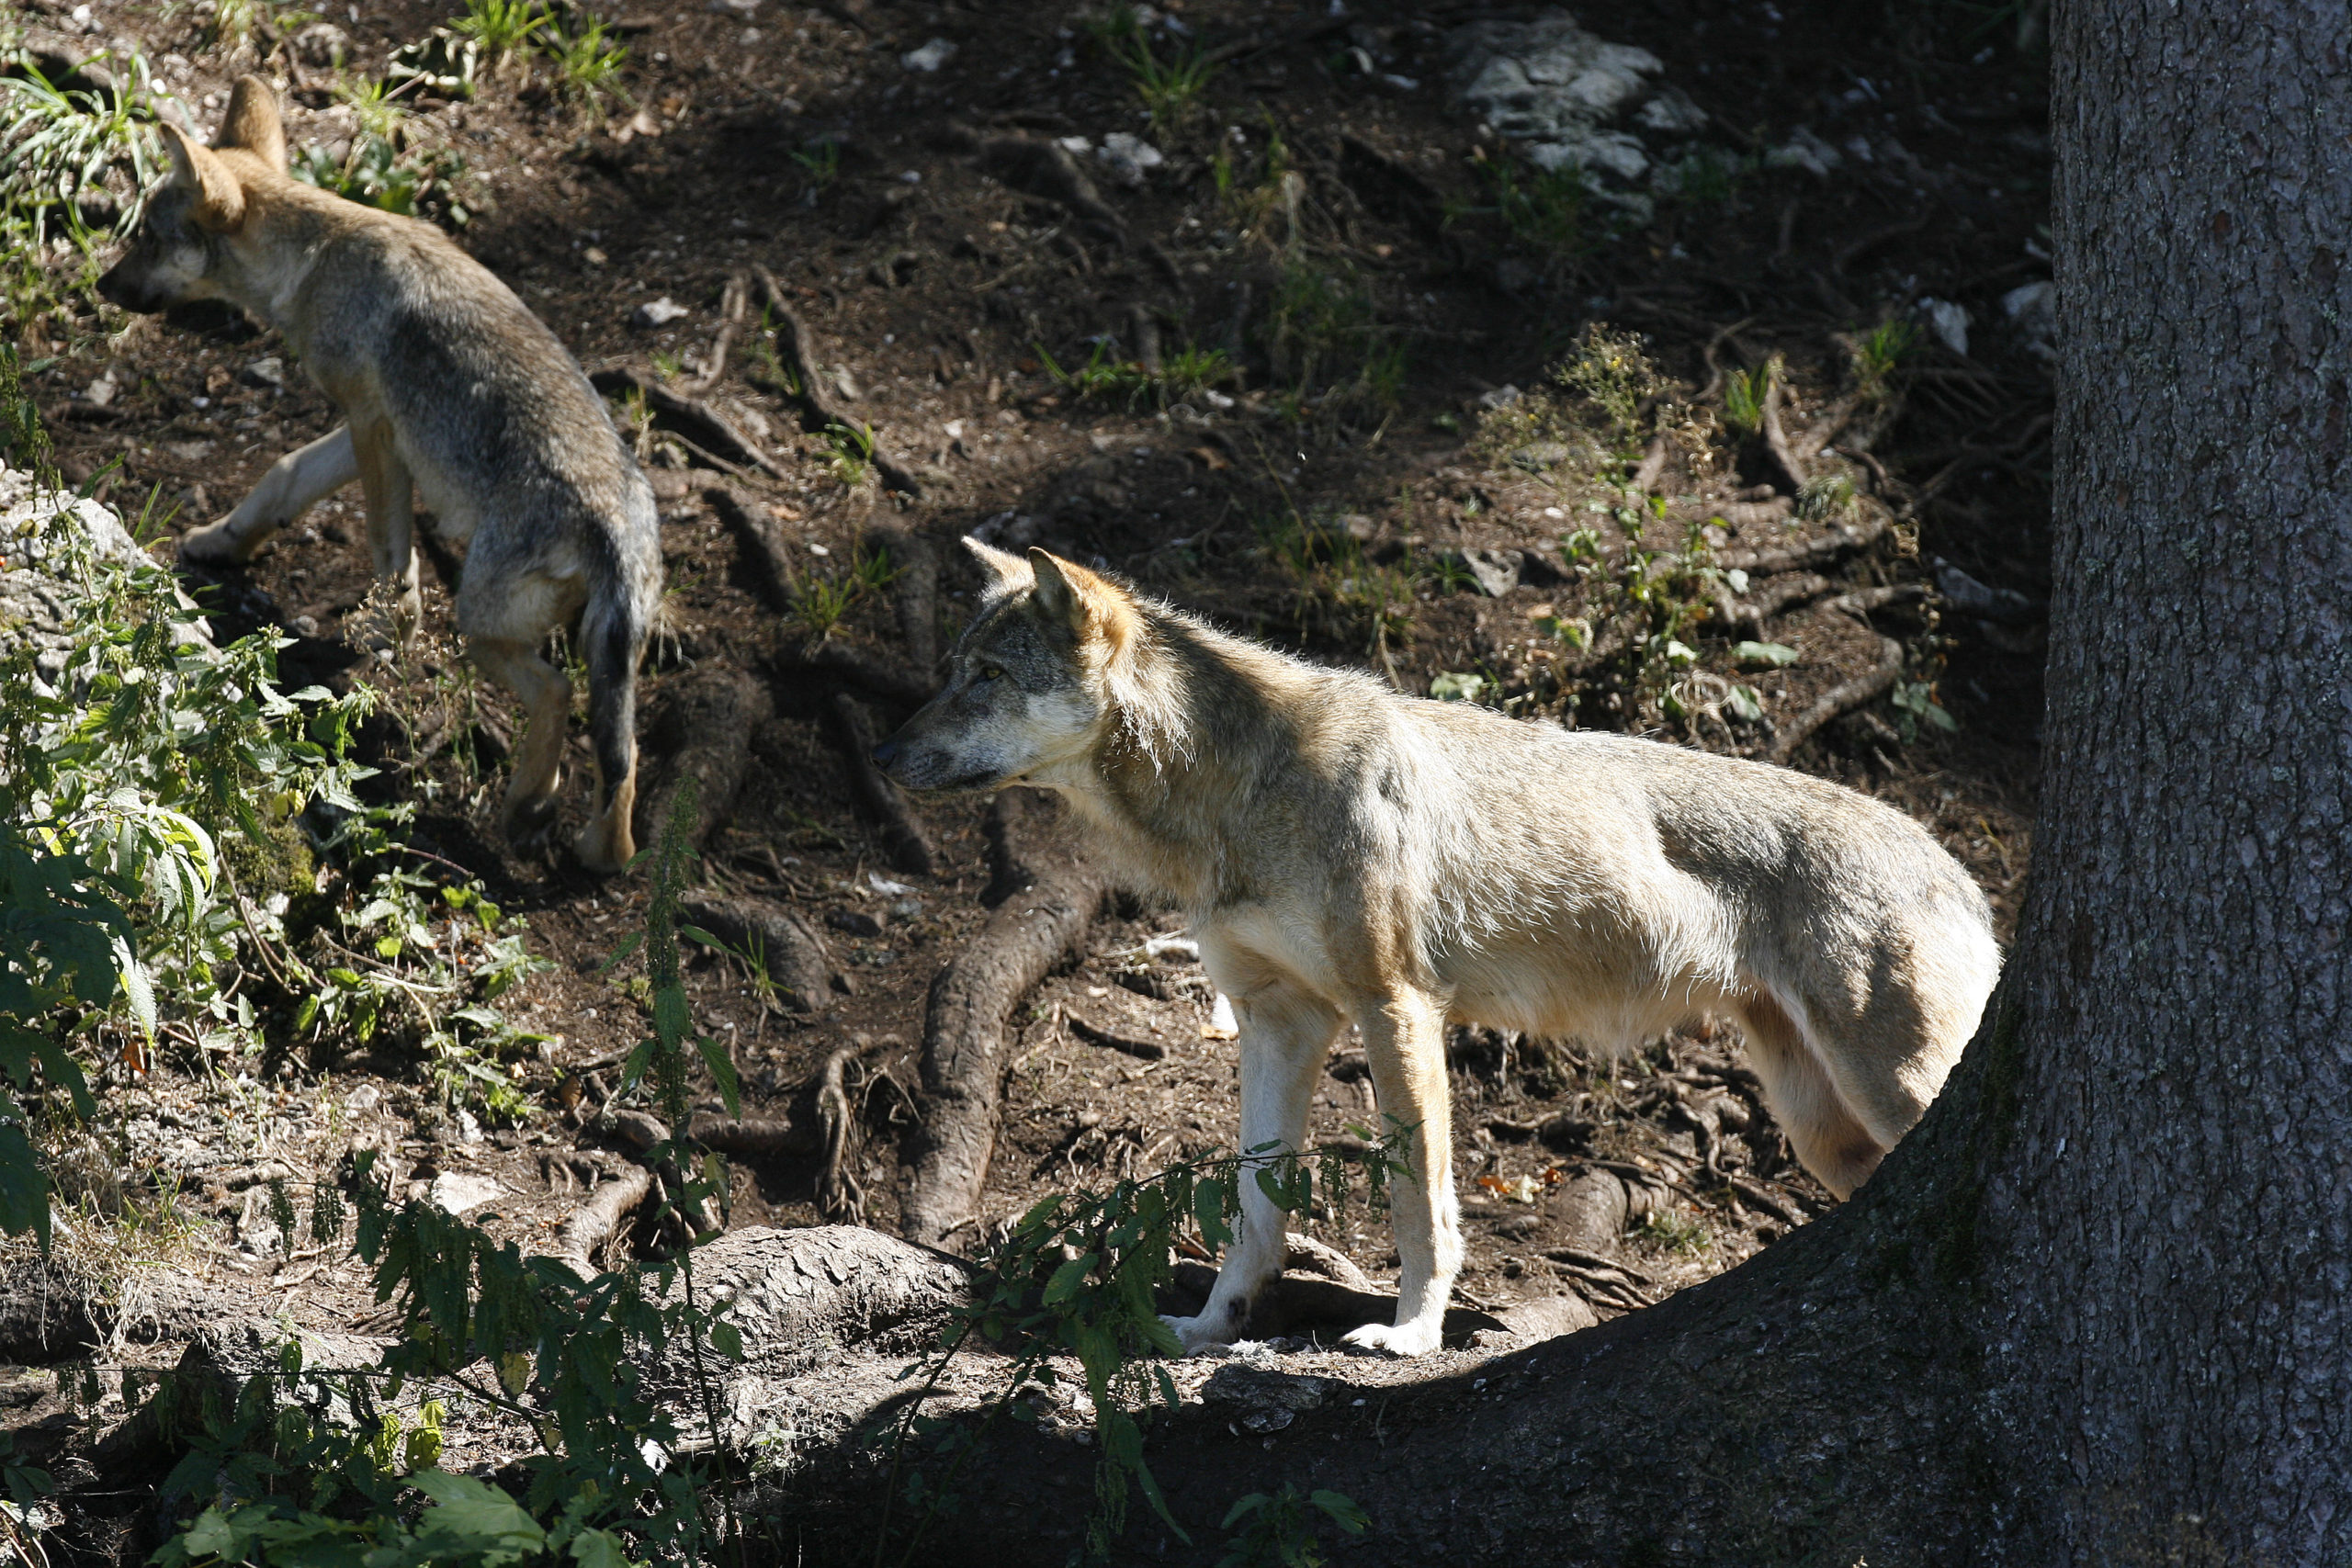 Tir de régulation de deux jeunes loups autorisé